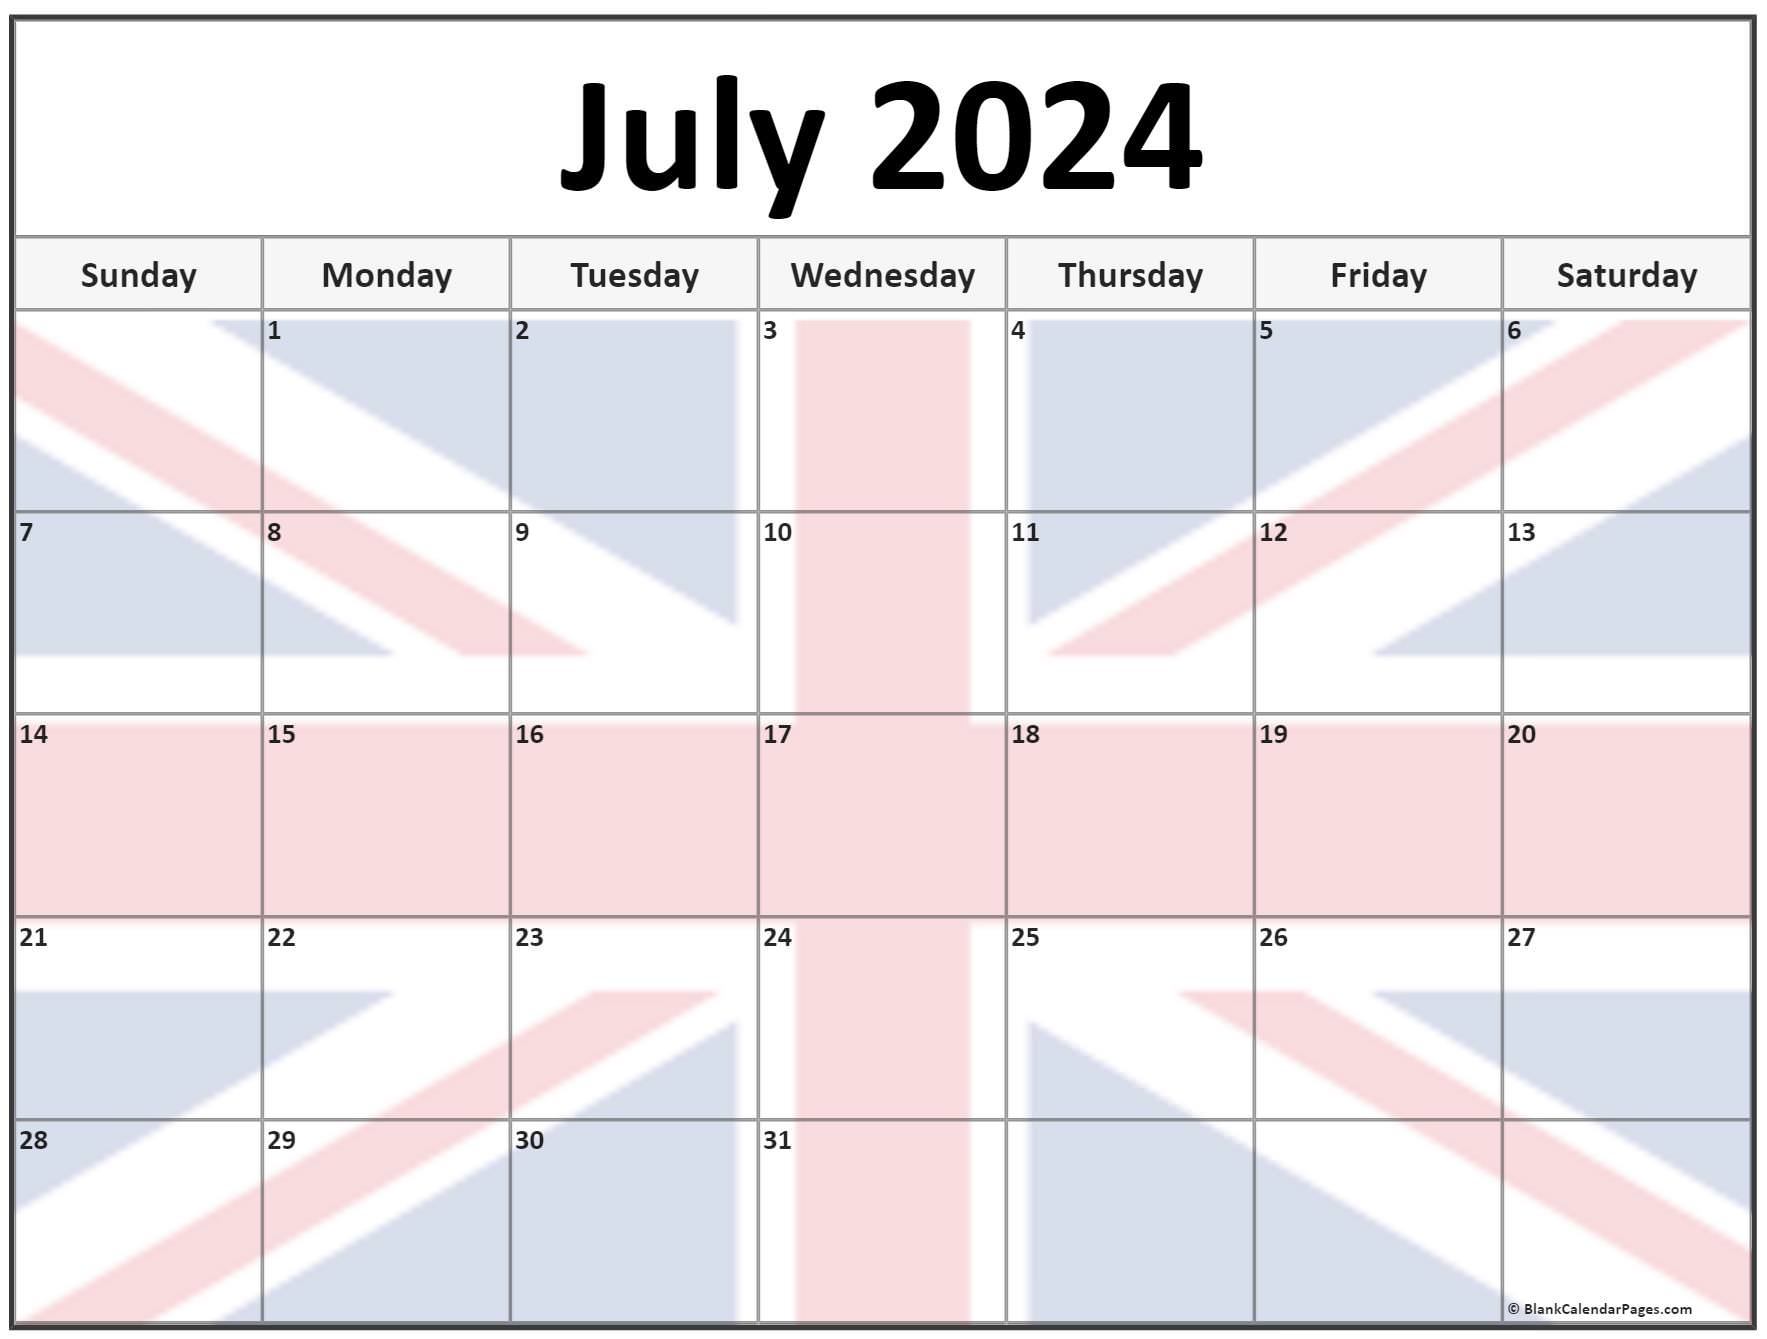 paris-events-calendar-july-2023-template-pelajaran